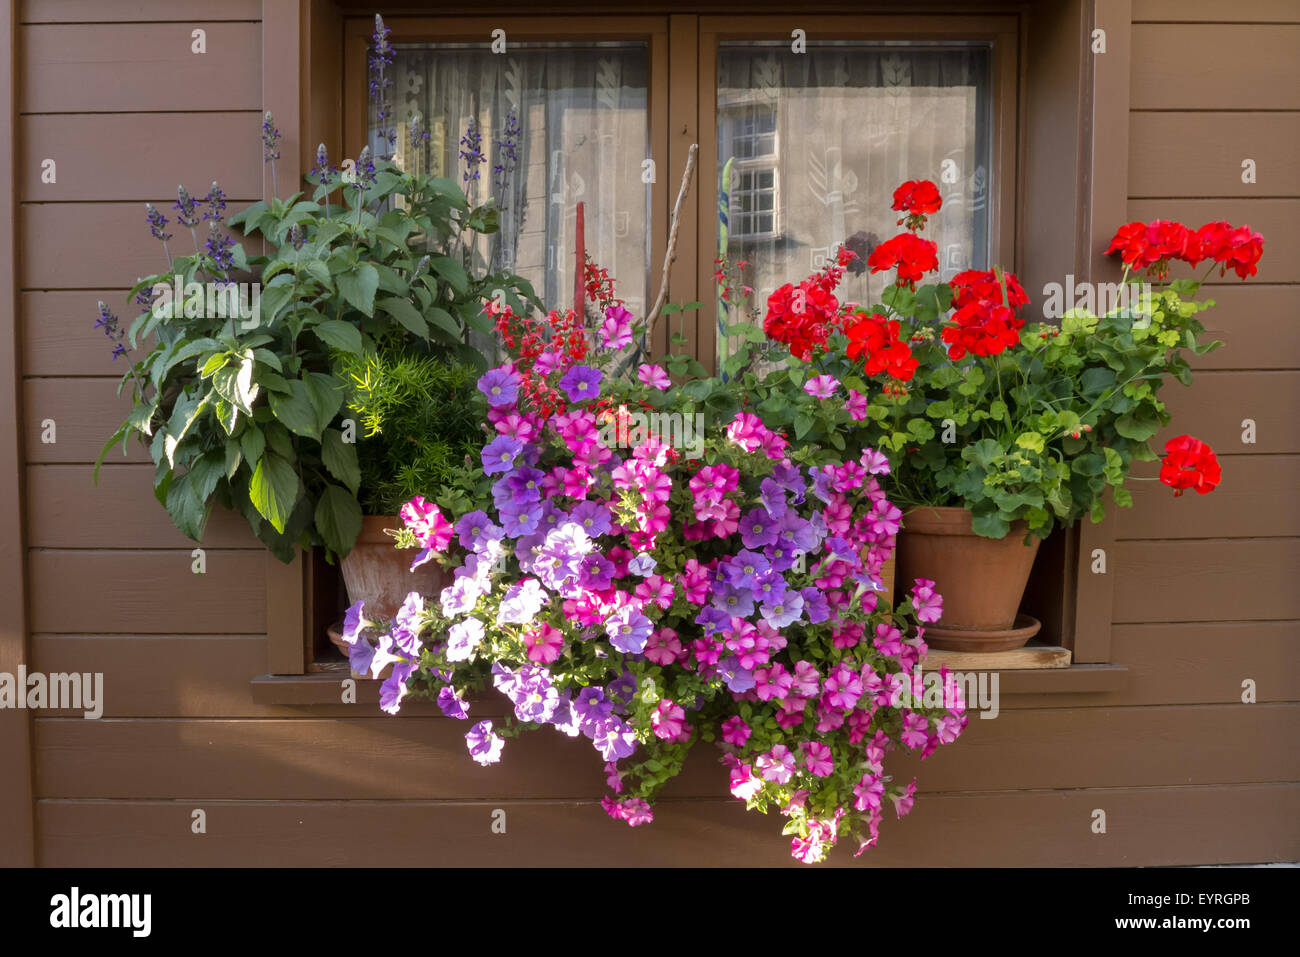 Schweiz. Typische bunte Blumen im Blumenkasten Stockfotografie - Alamy